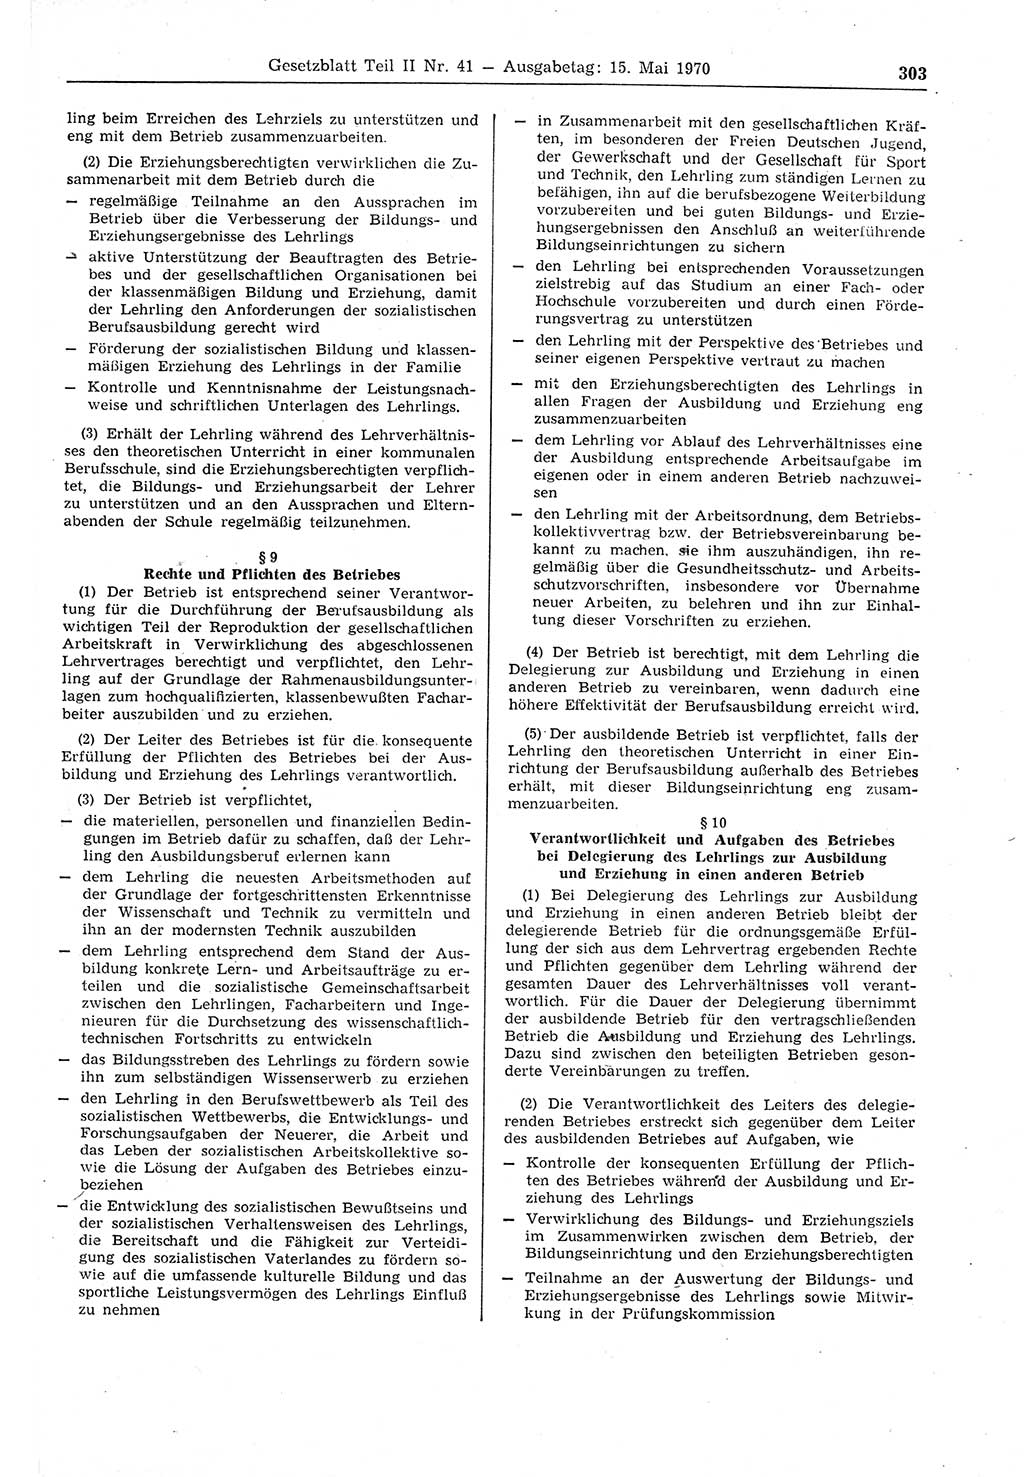 Gesetzblatt (GBl.) der Deutschen Demokratischen Republik (DDR) Teil ⅠⅠ 1970, Seite 303 (GBl. DDR ⅠⅠ 1970, S. 303)